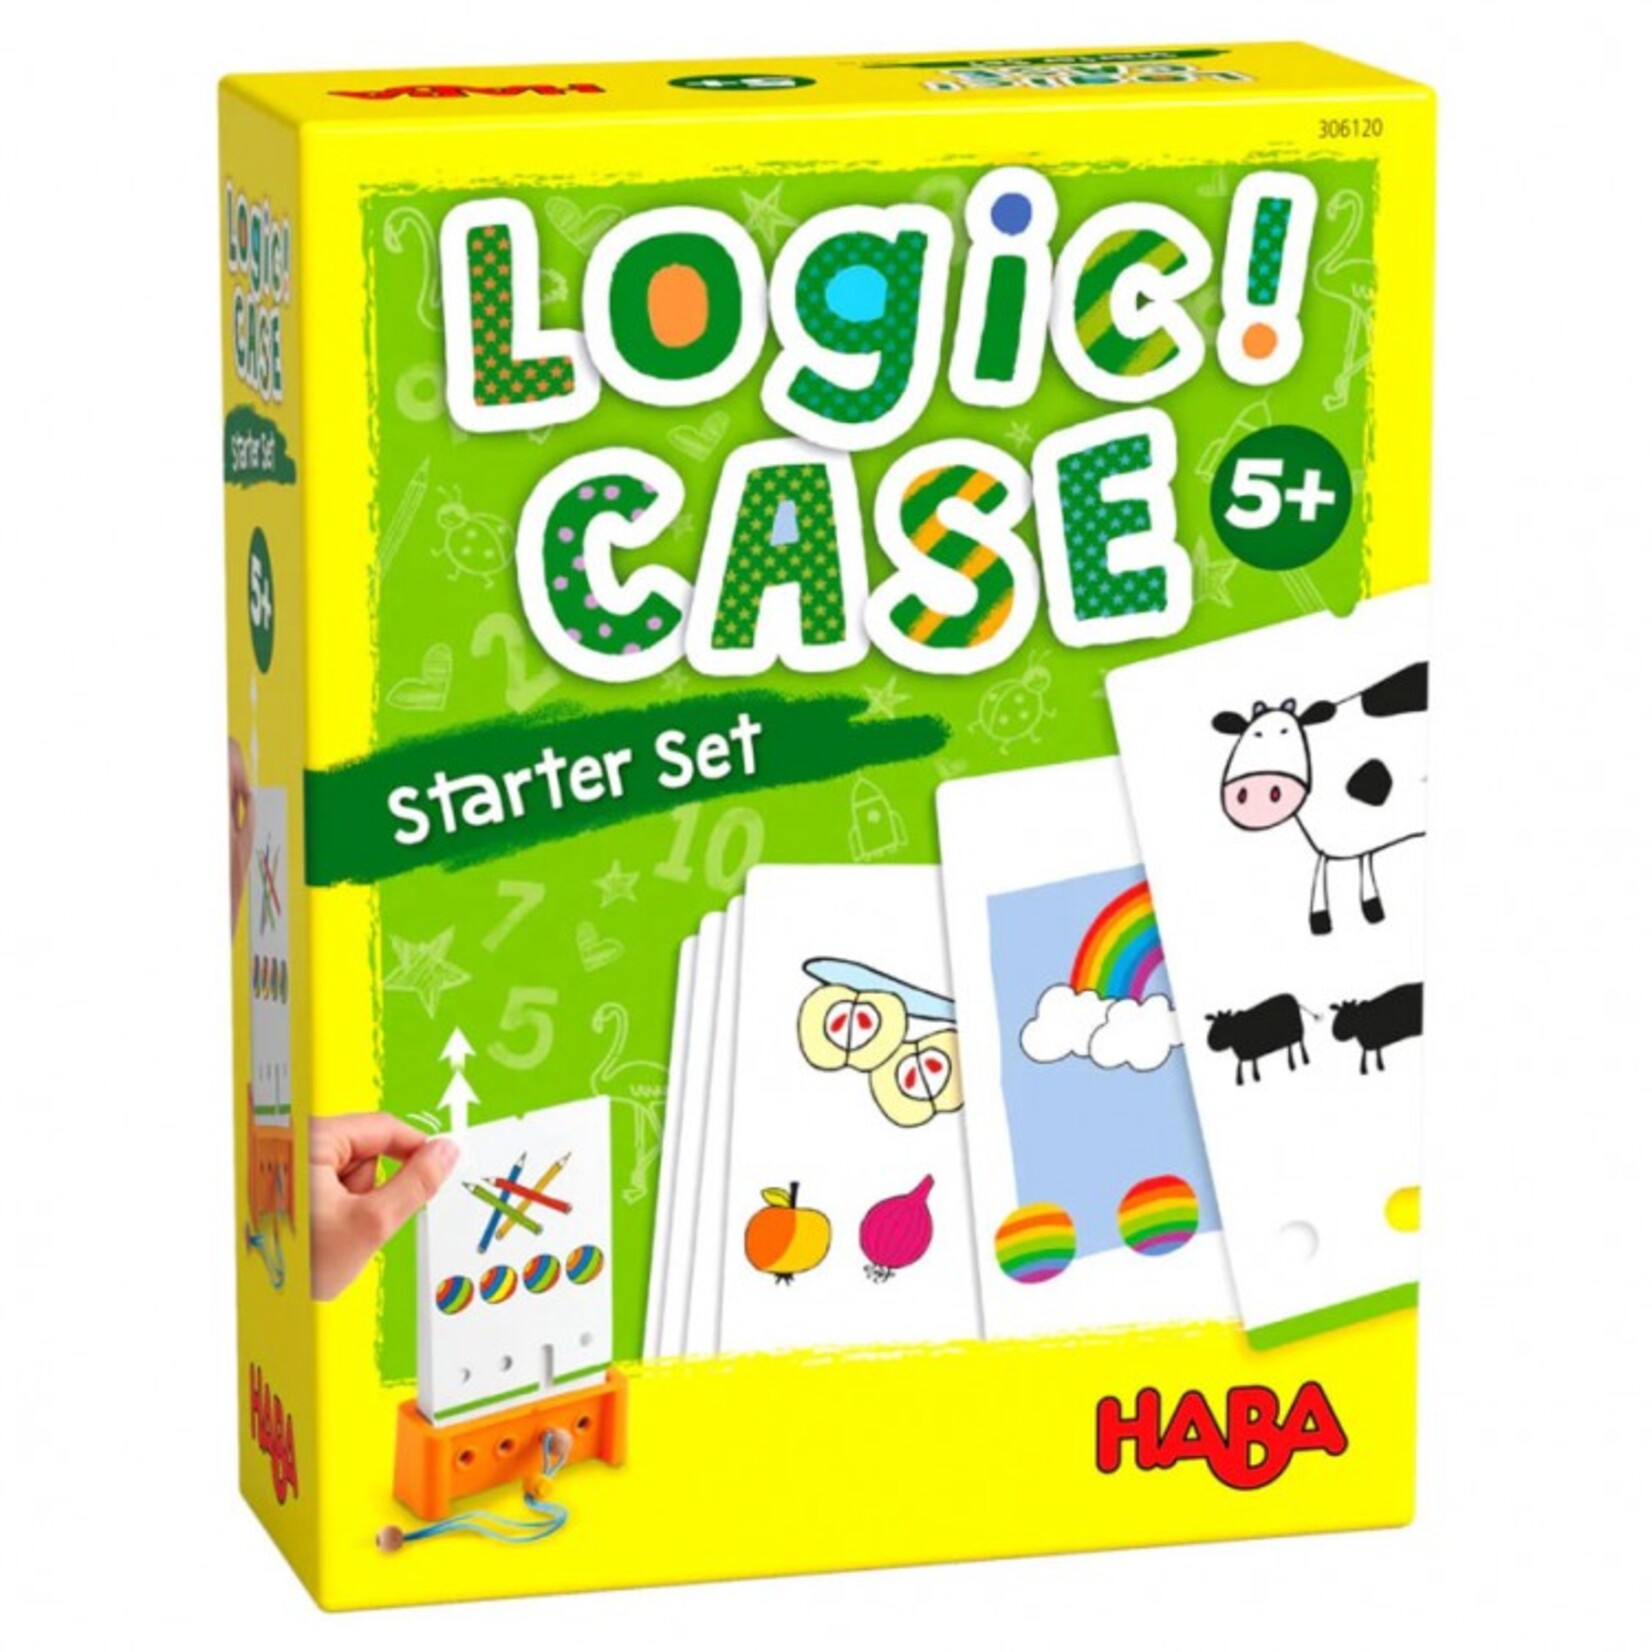 HABA HABA Logic Case Starter Set 5+